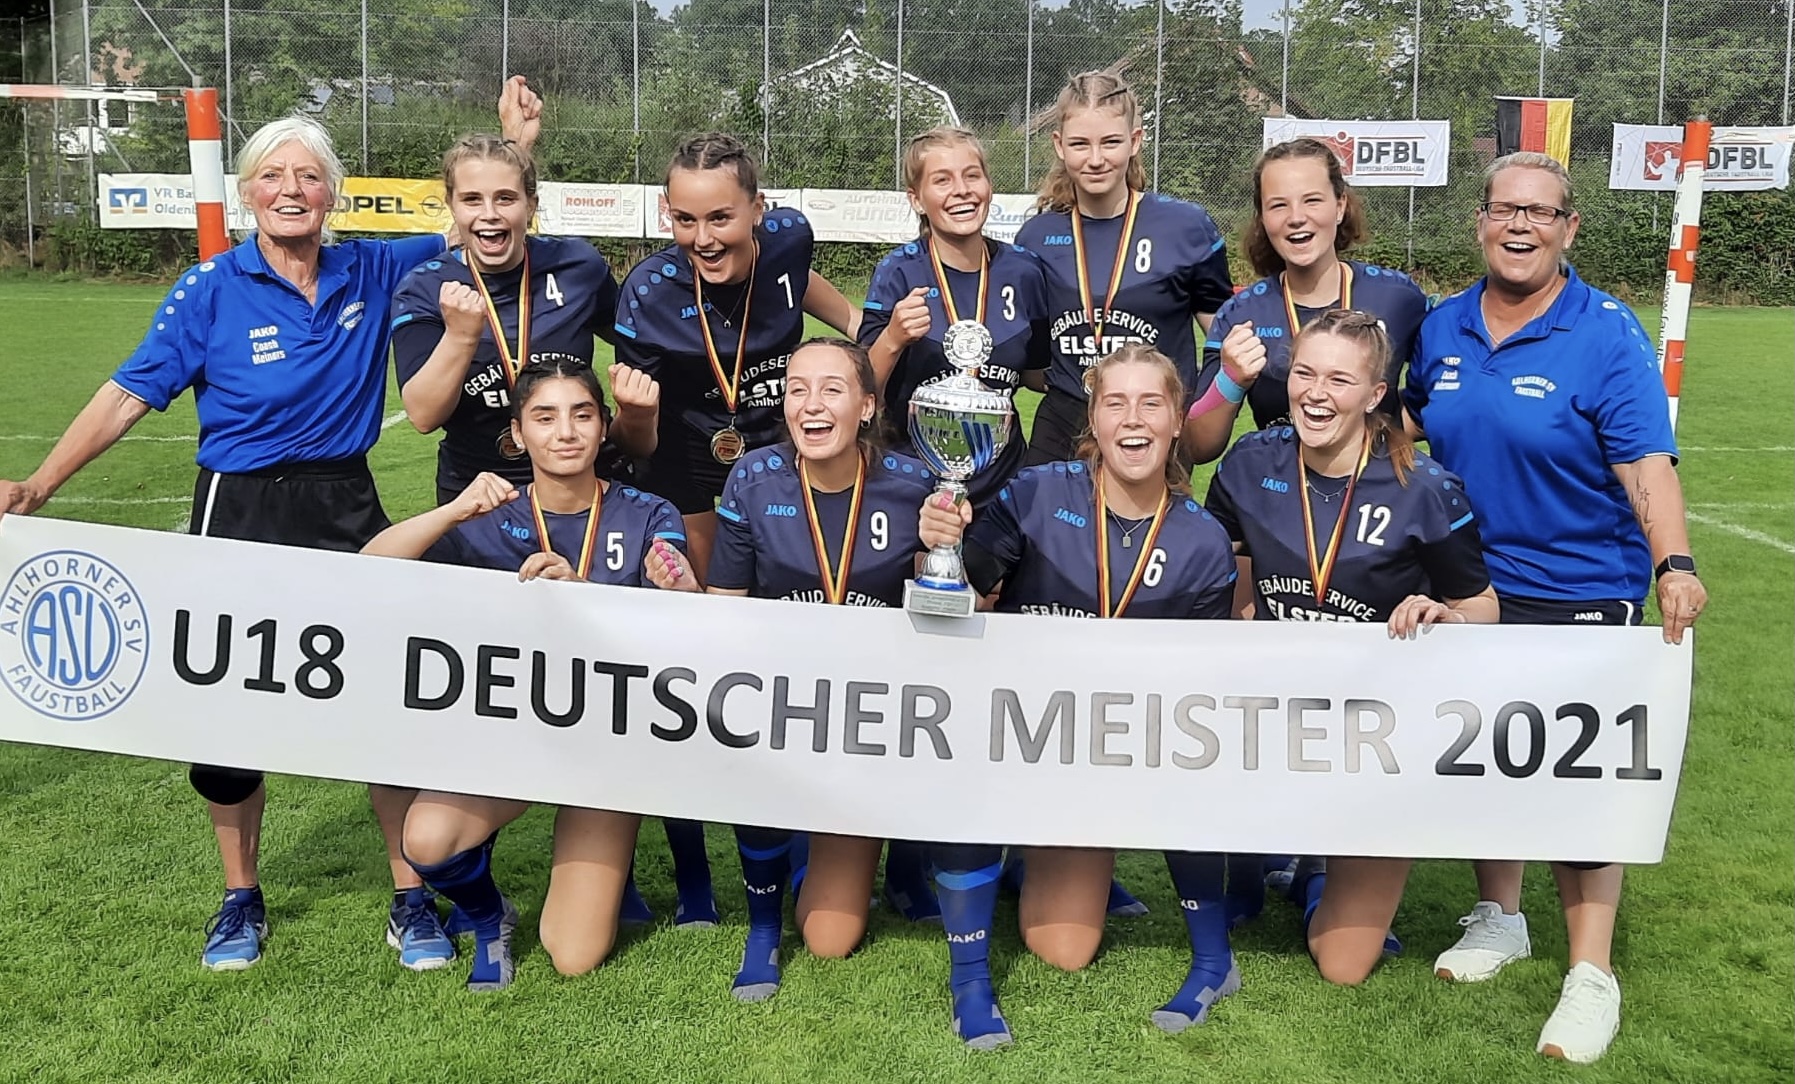 Deutscher Meister weibliche U18